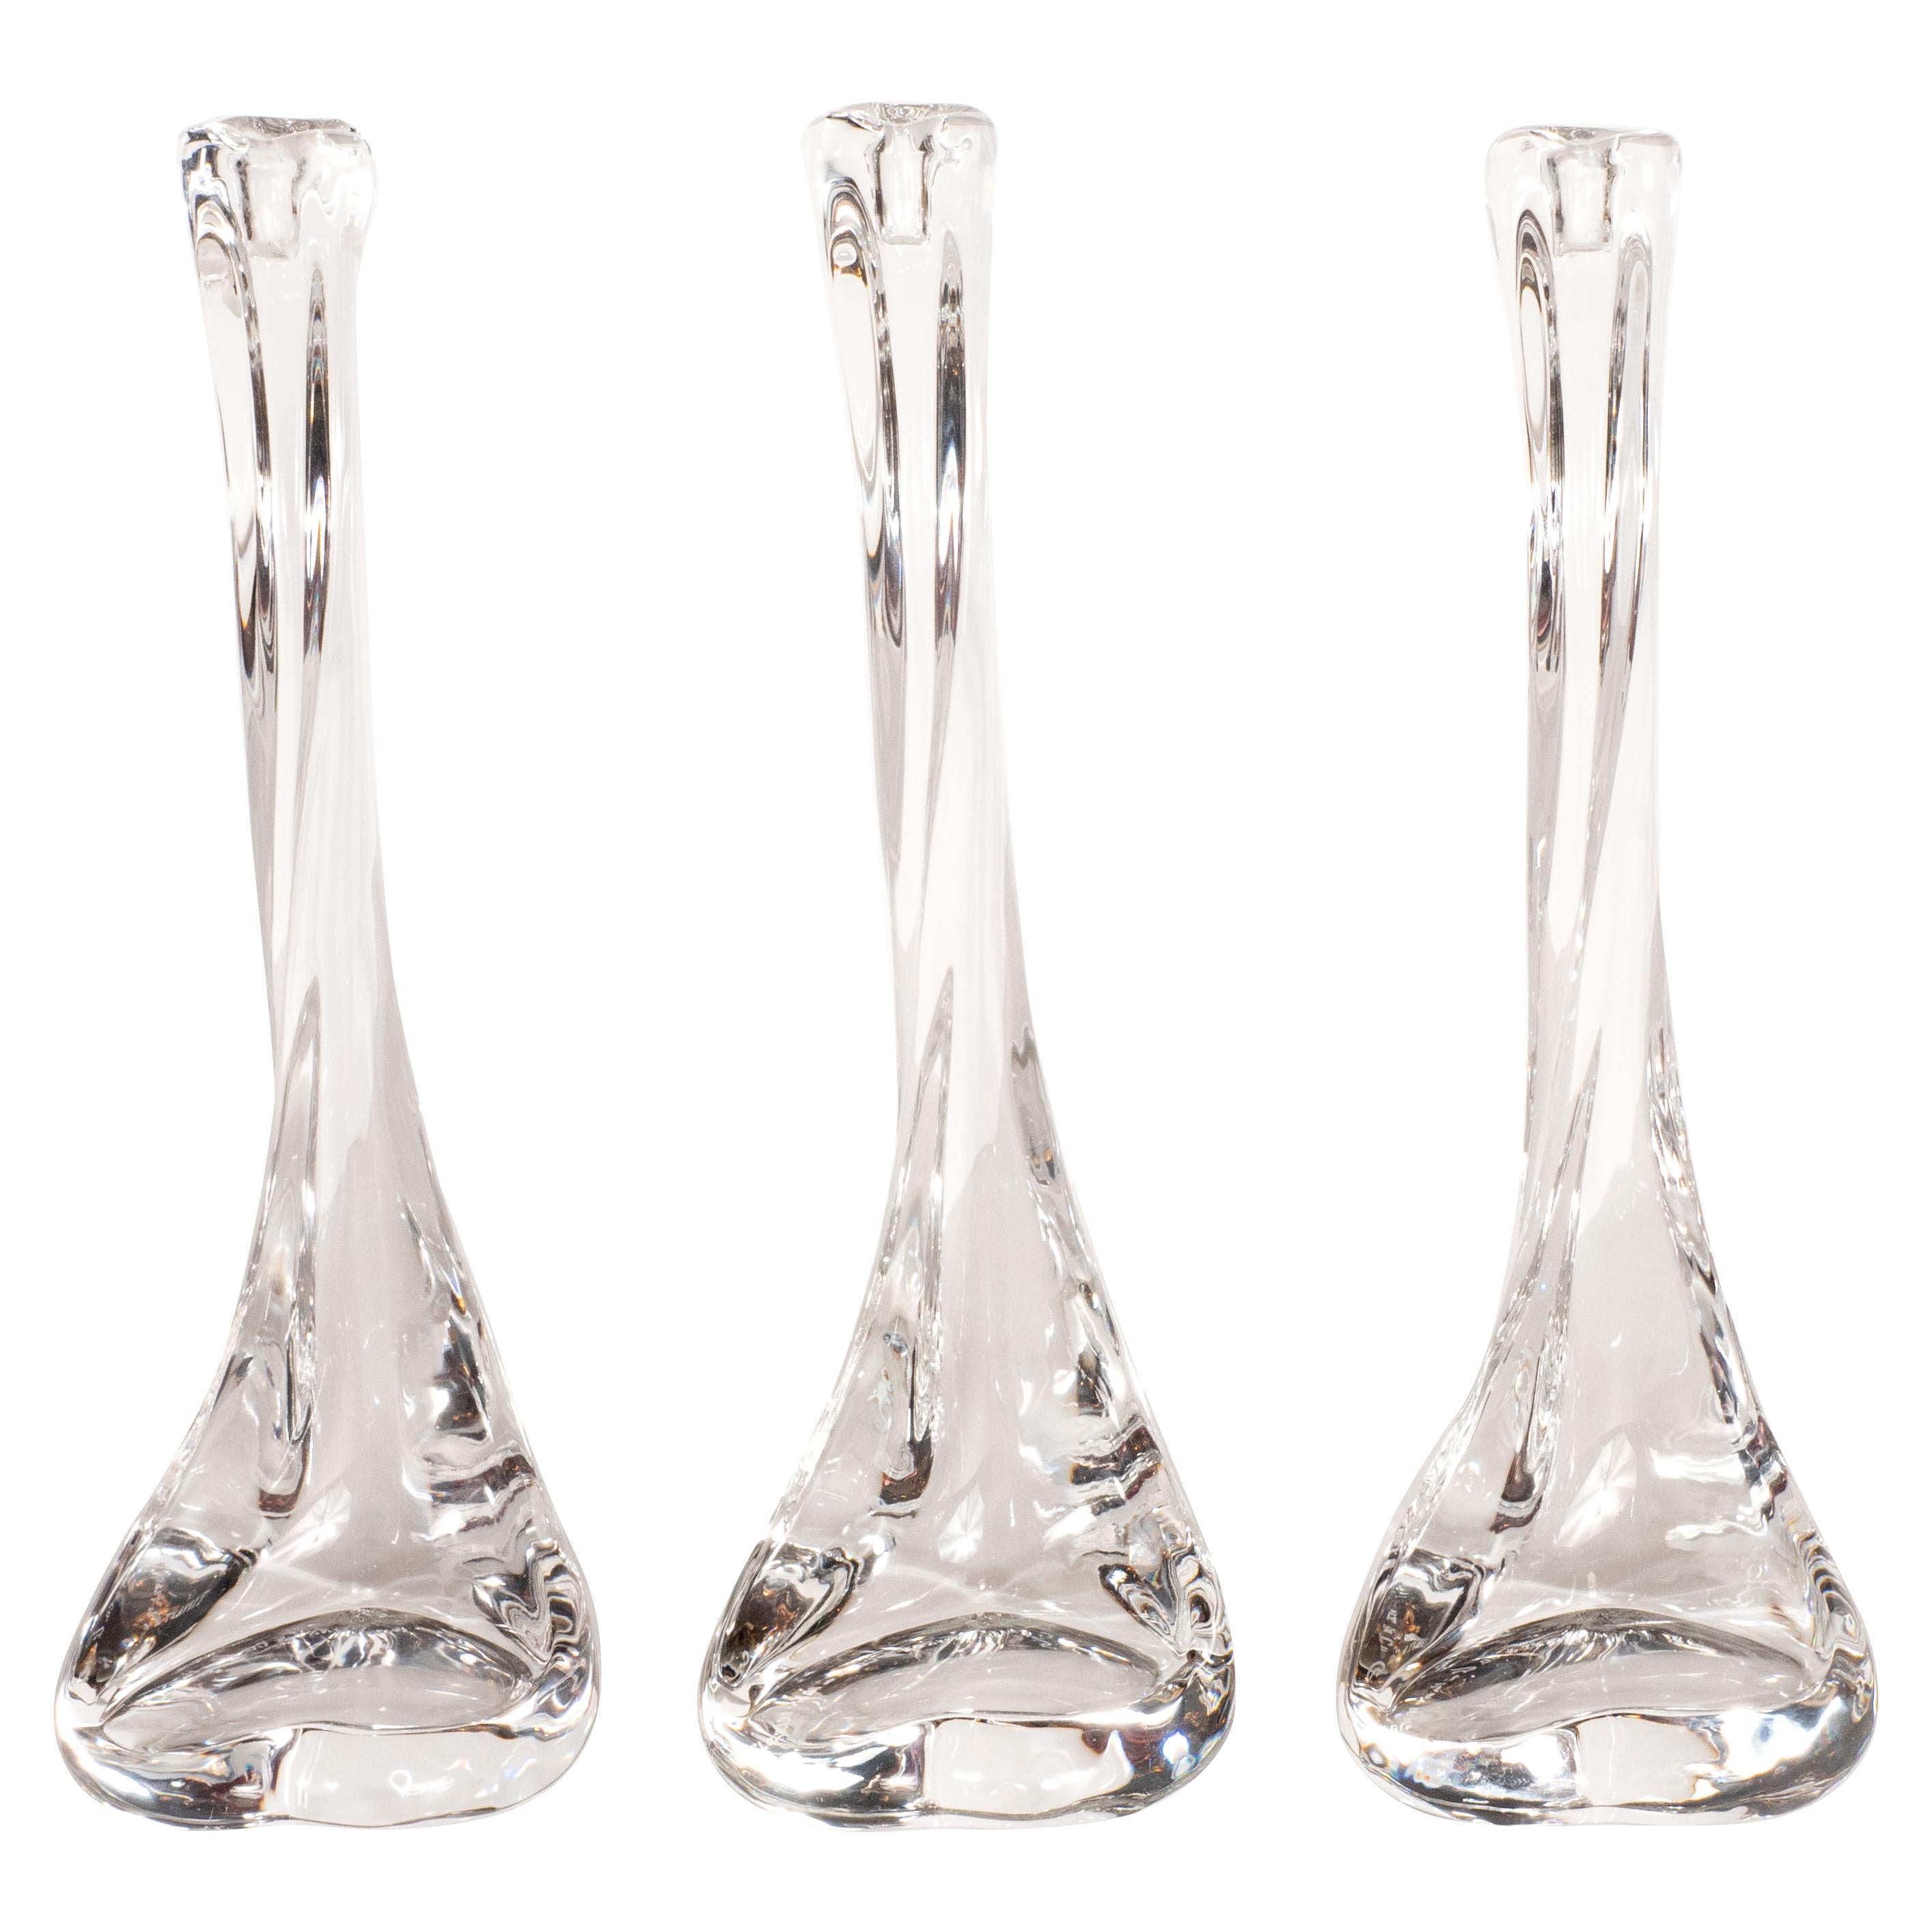 Set of Three Blown Crystal "Bone" Candlesticks by Elsa Peretti for Tiffany & Co.